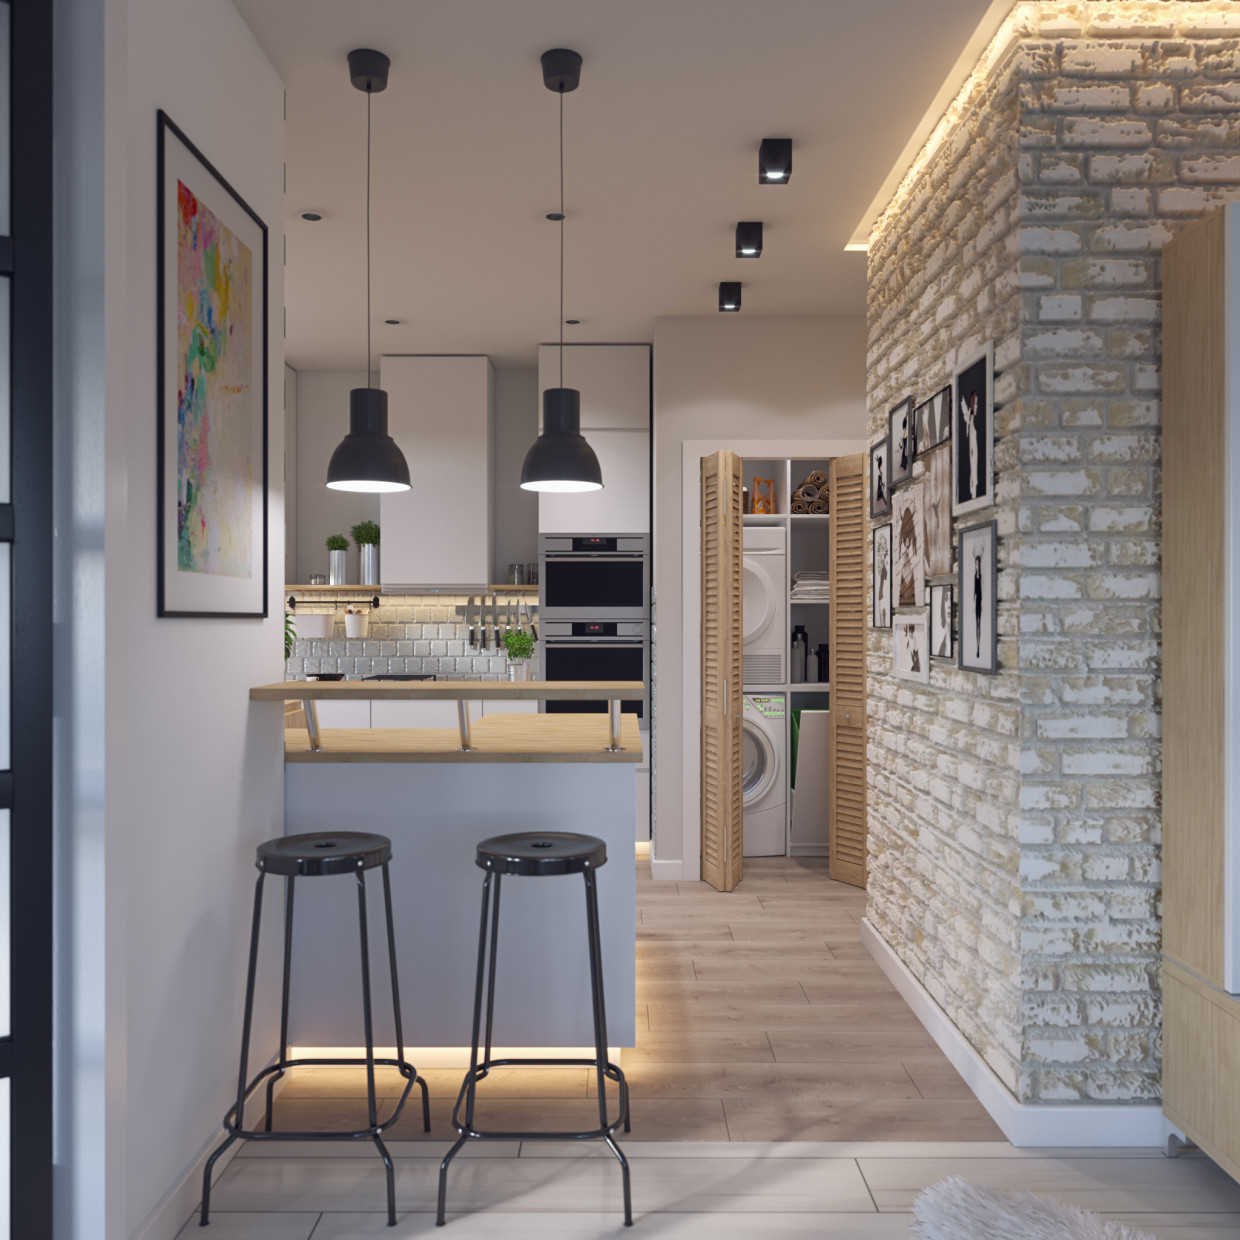 Visualizar o cozinha-estúdio com móveis da IKEA em 3d max corona render imagem